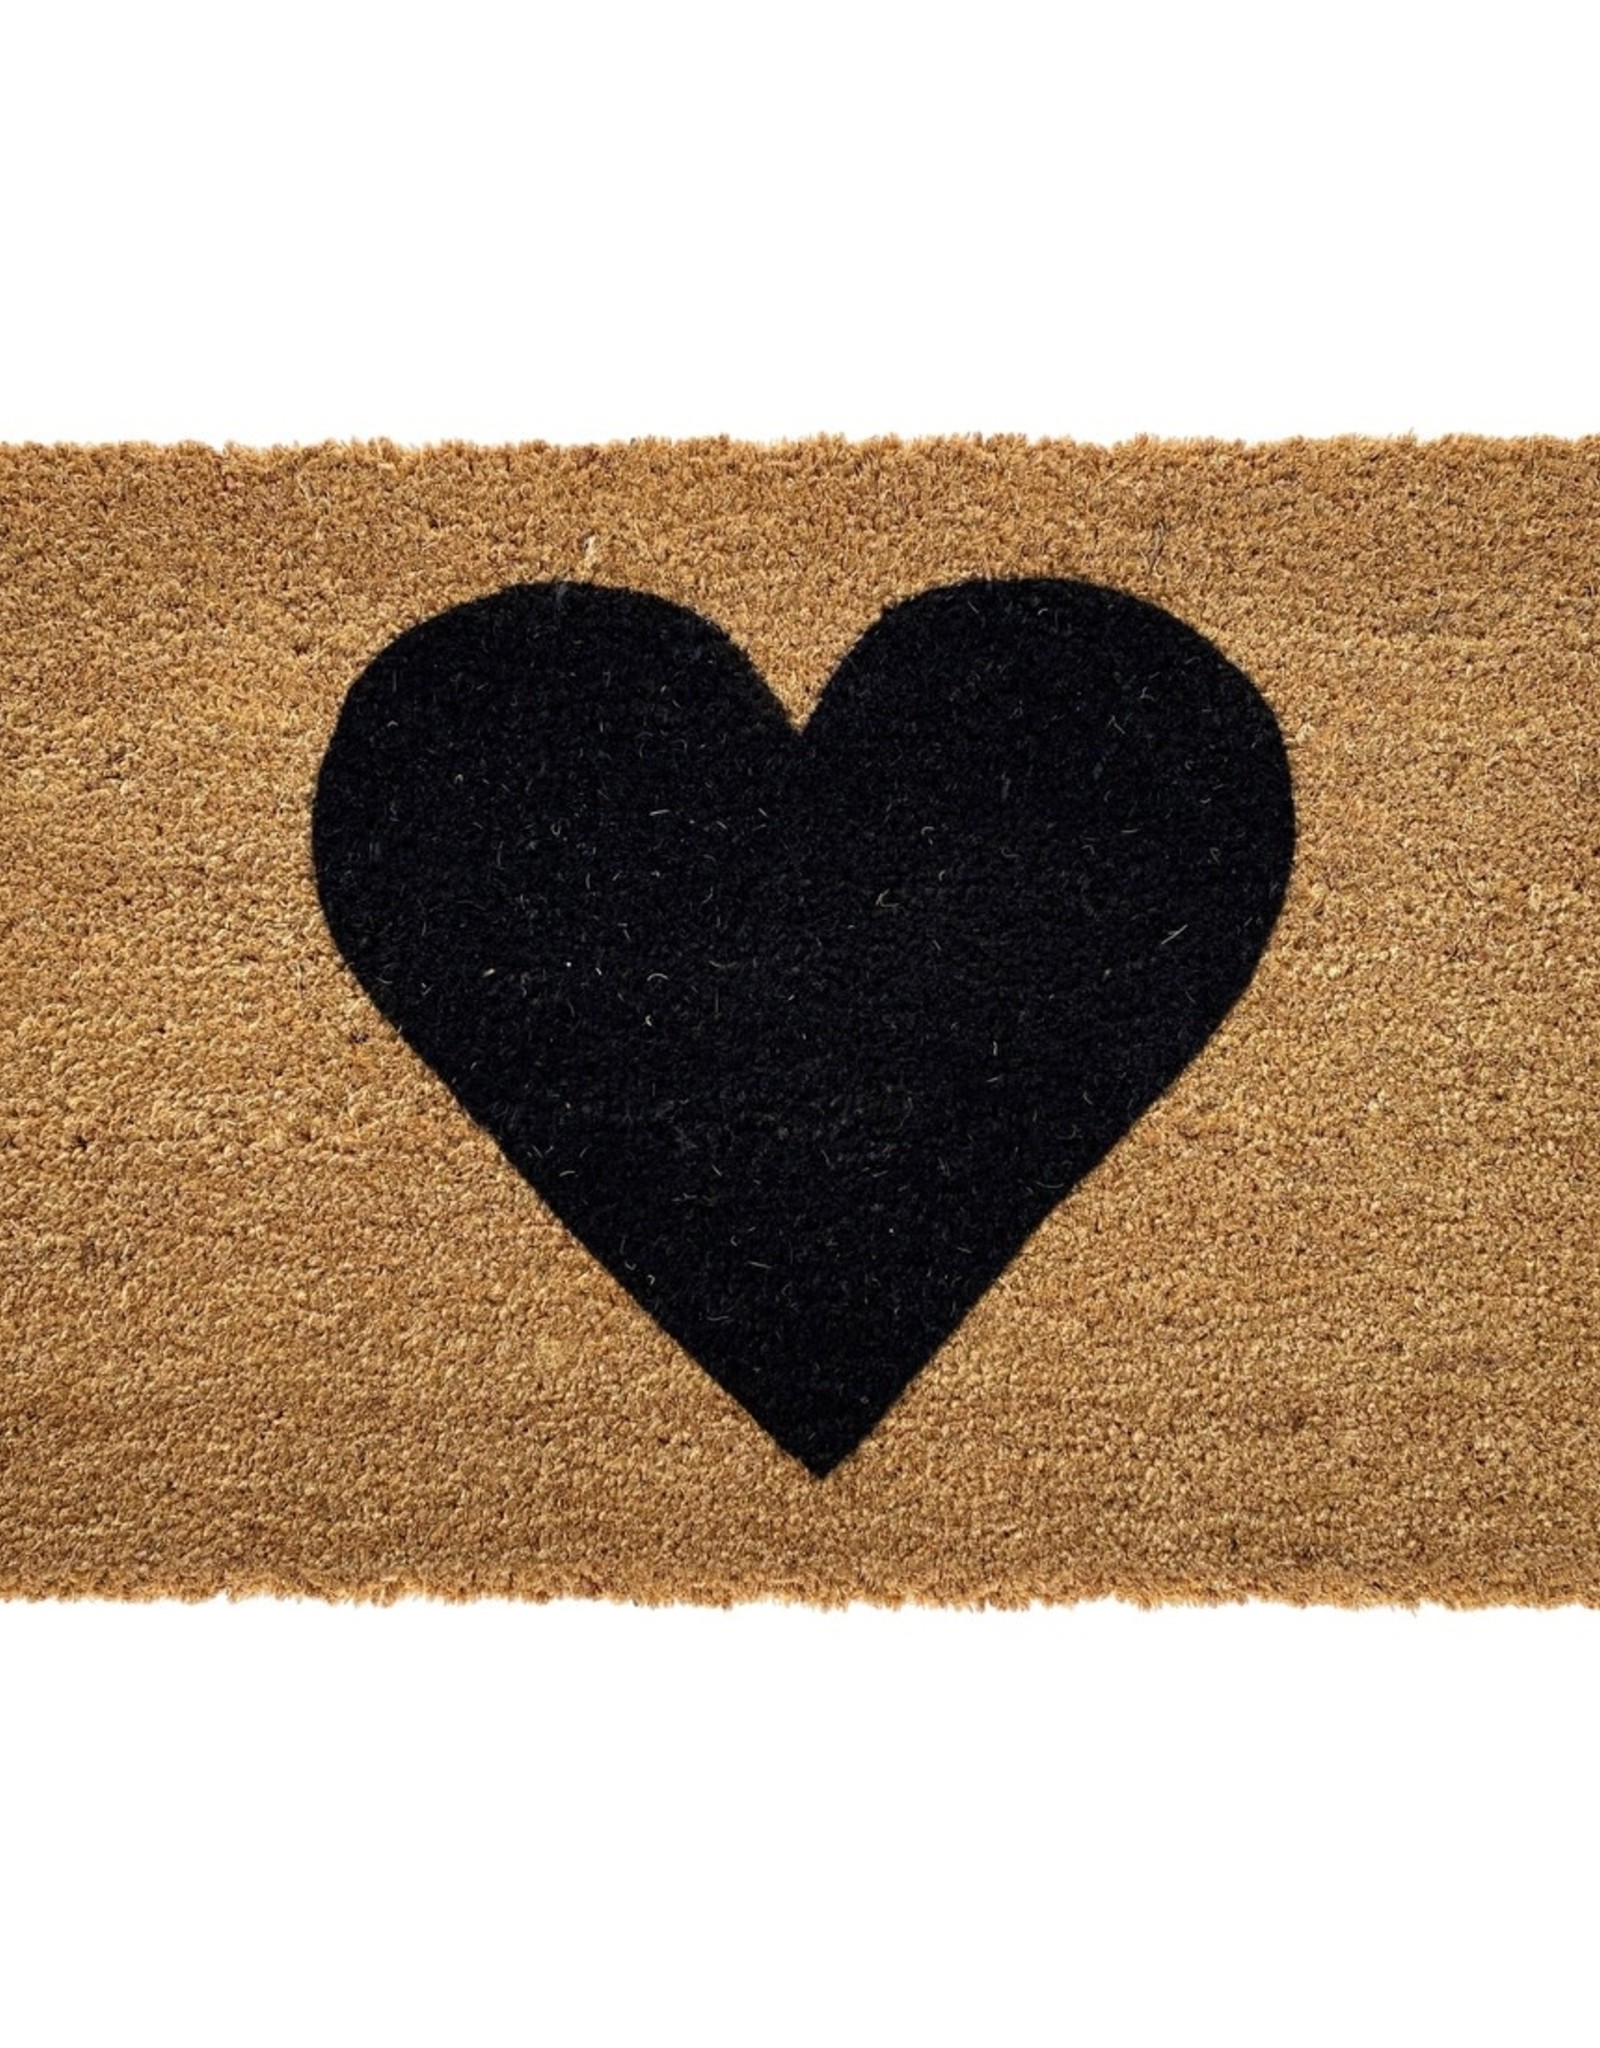 Black Heart Doormat 24x36